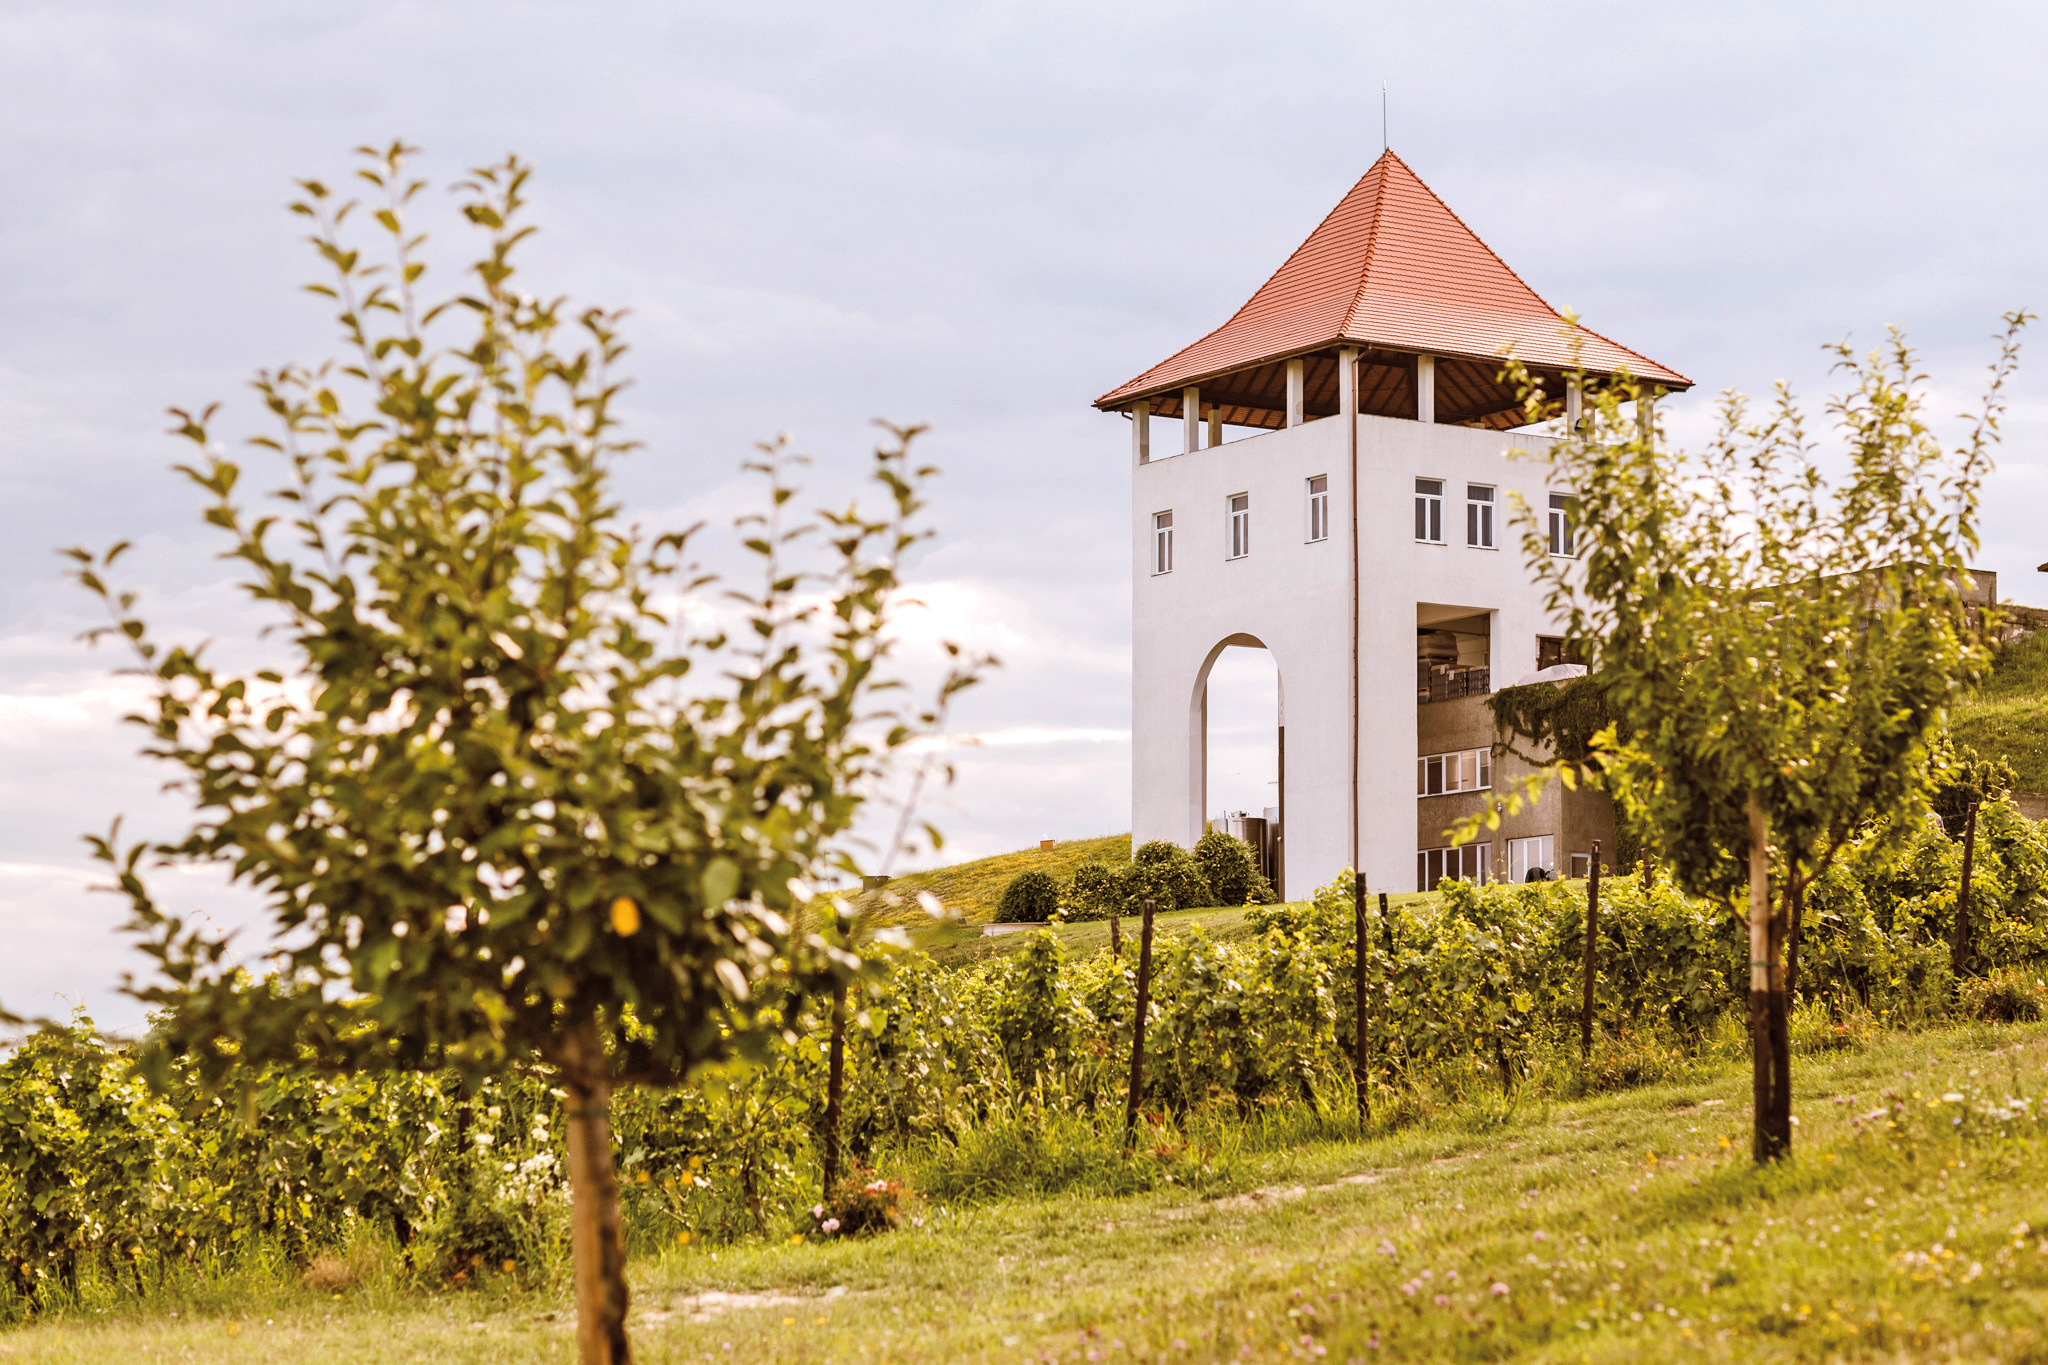 Business MAGAZIN. Heiner Oberrauch, un antreprenor sud-tirolez care deţine brandul de articole outdoor Salewa, a cumpărat un deal din Transilvania şi cu 3,5 mil. euro a făcut unul dintre cele mai cunoscute vinuri: Villa Vinèa